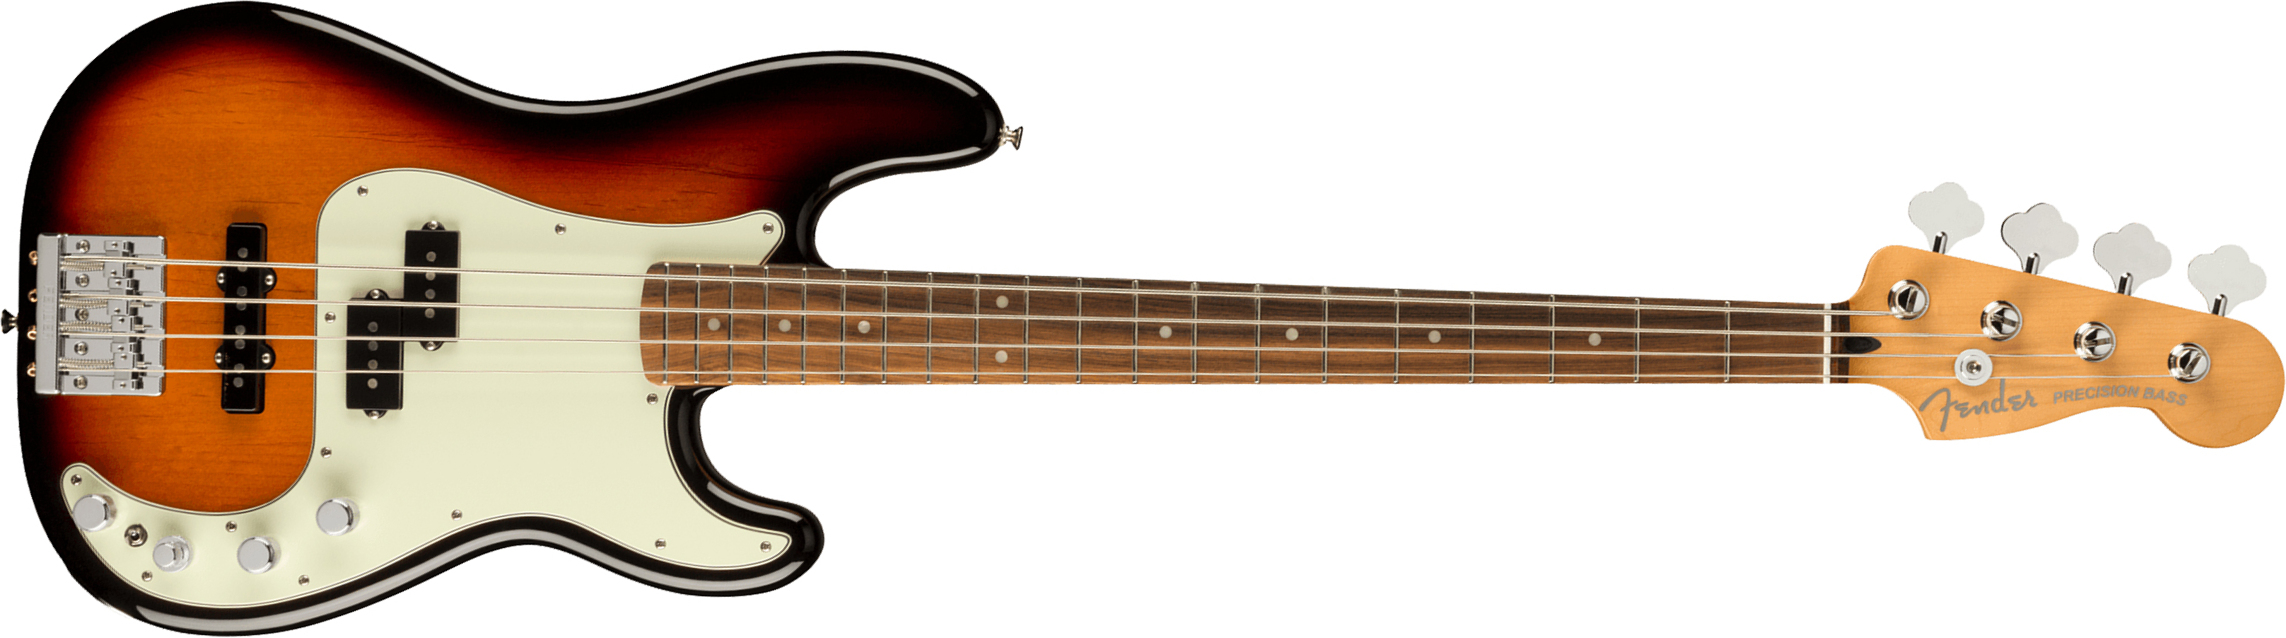 Fender Precision Bass Player Plus Mex Active Pf - 3-color Sunburst - Bajo eléctrico de cuerpo sólido - Main picture